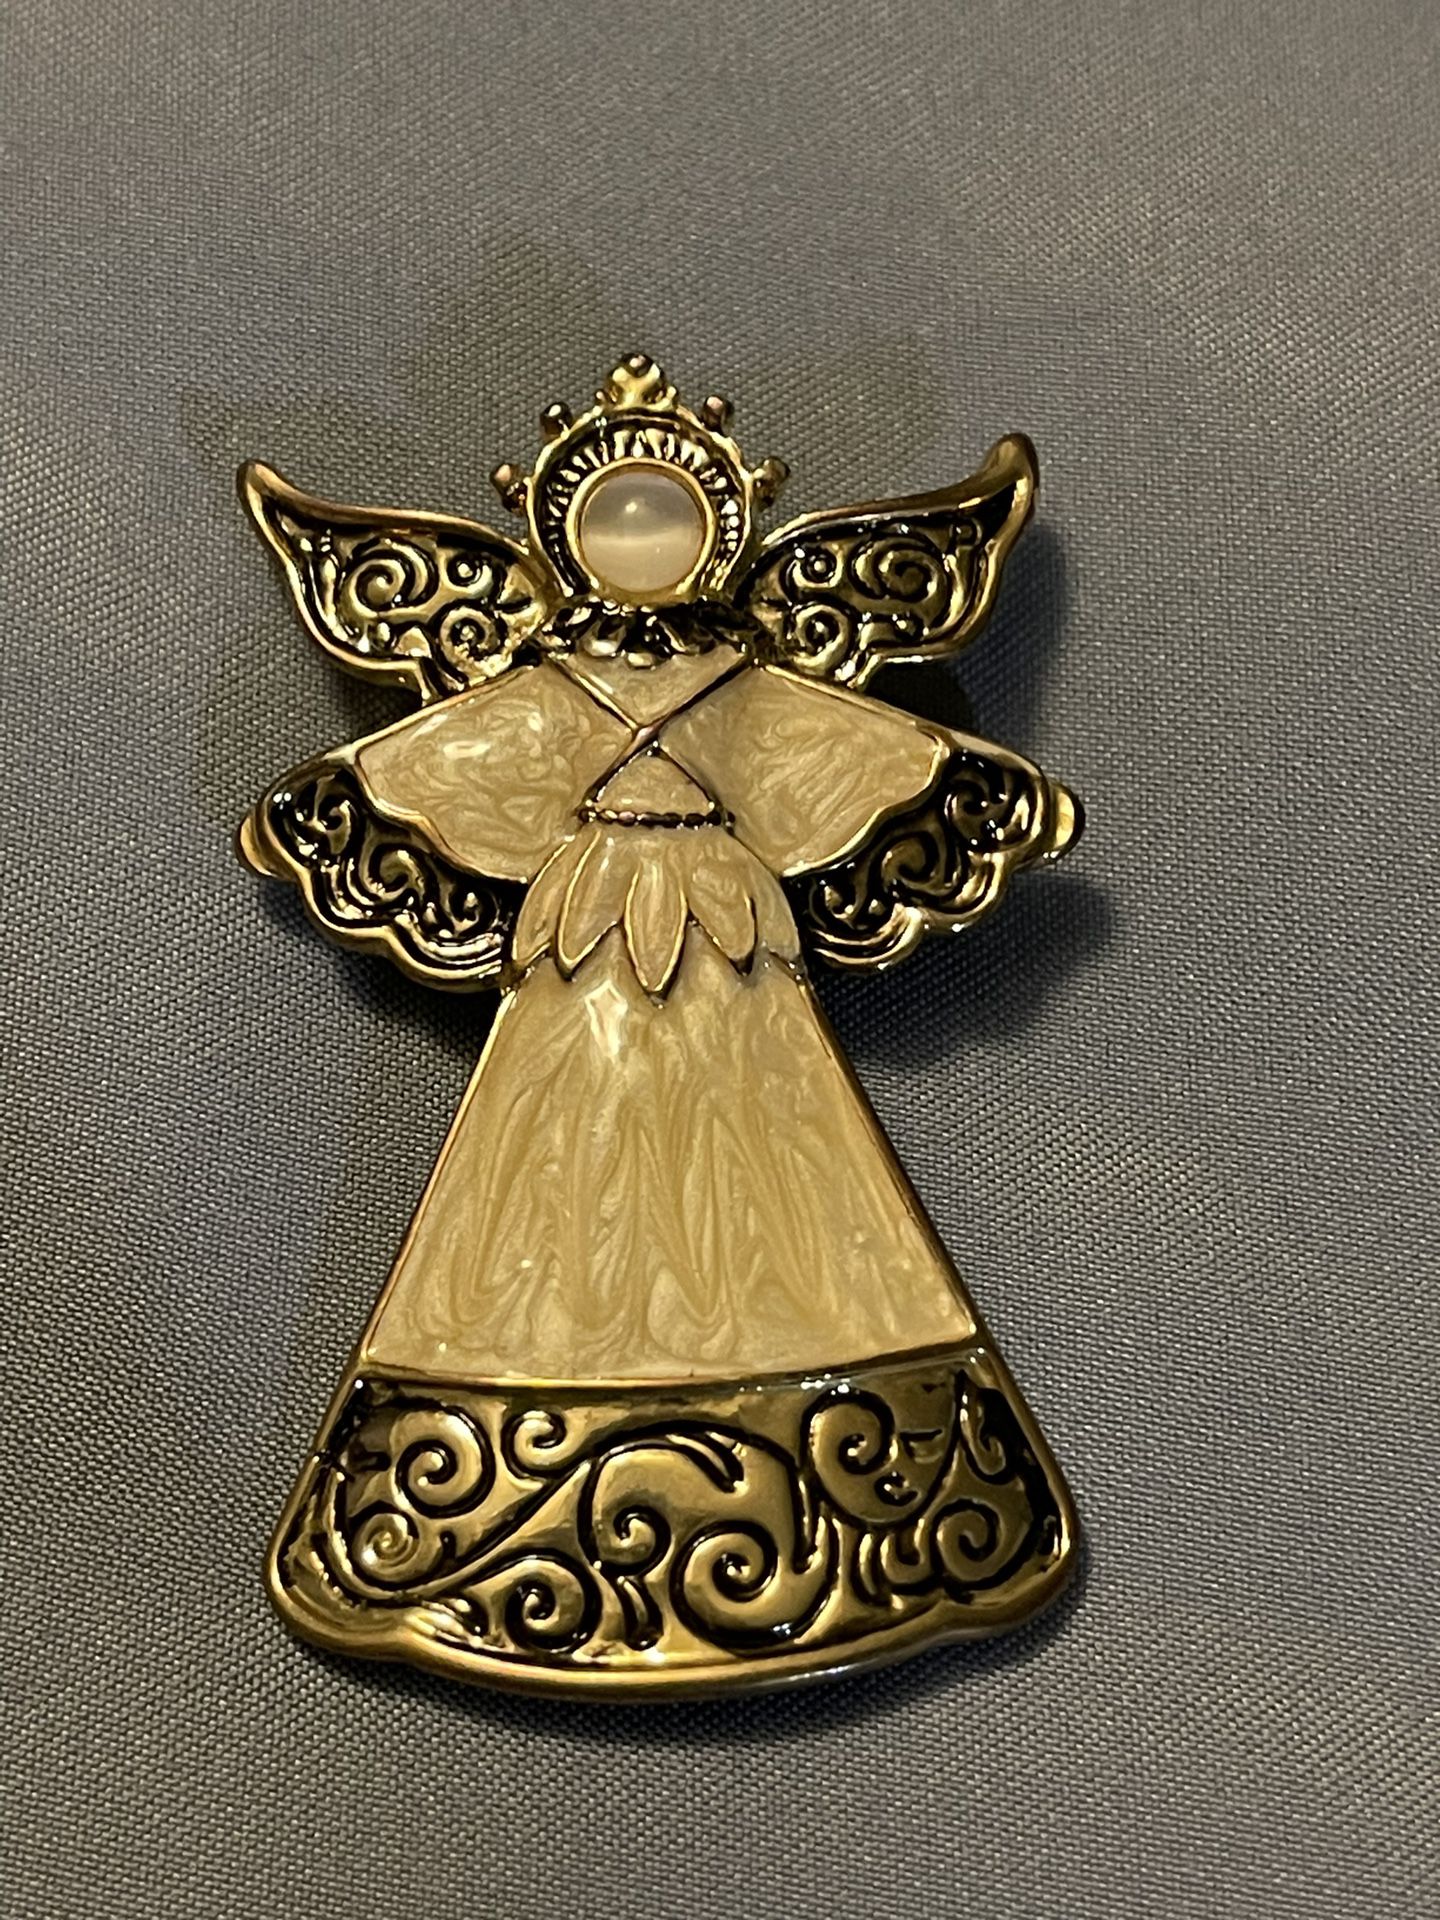 Beautiful Angel Vintage Pin Brooch 